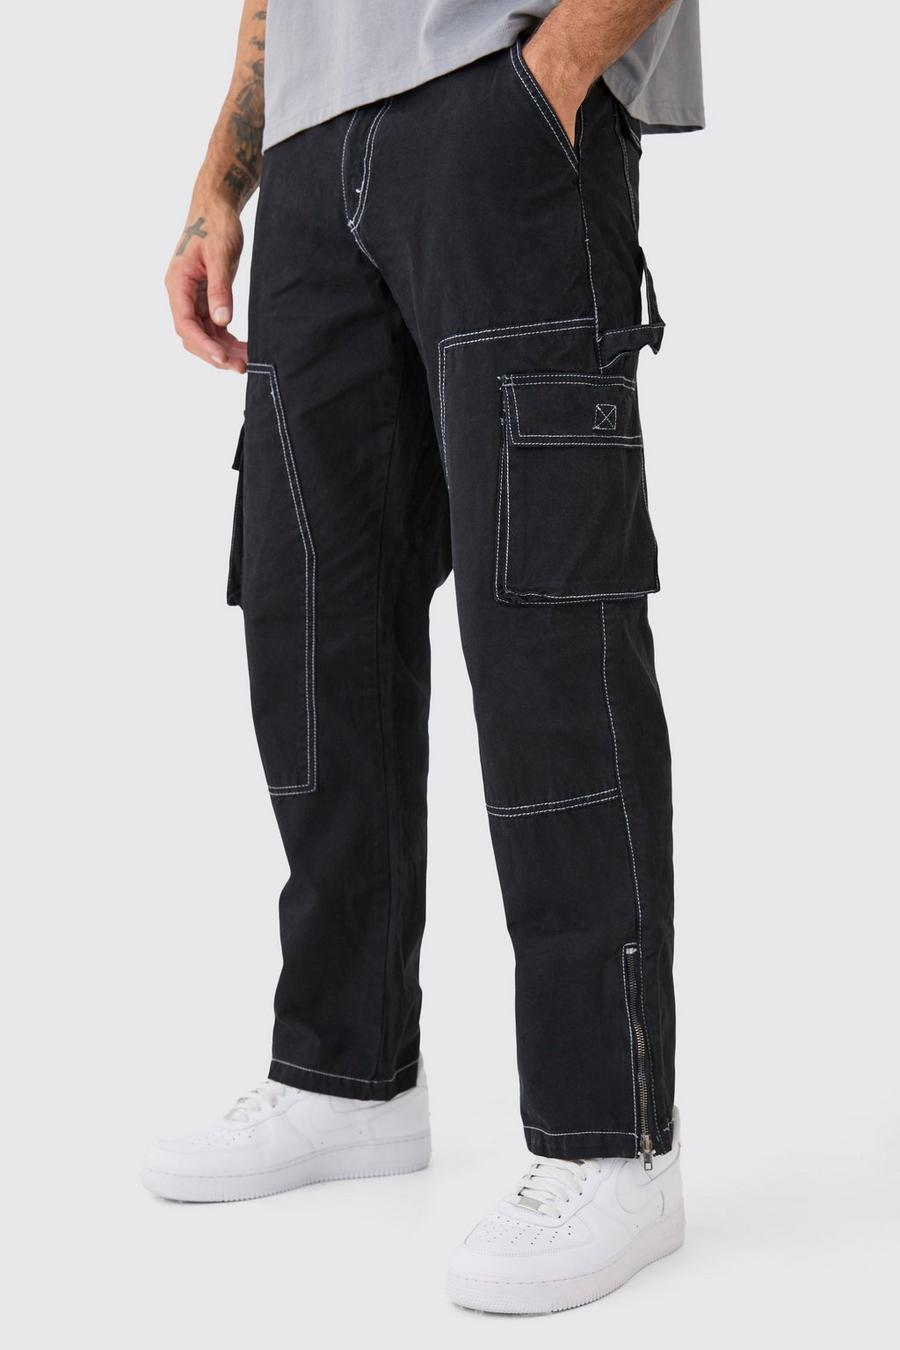 Pantaloni rilassati stile Carpenter con cuciture a contrasto e zip sul fondo, Black